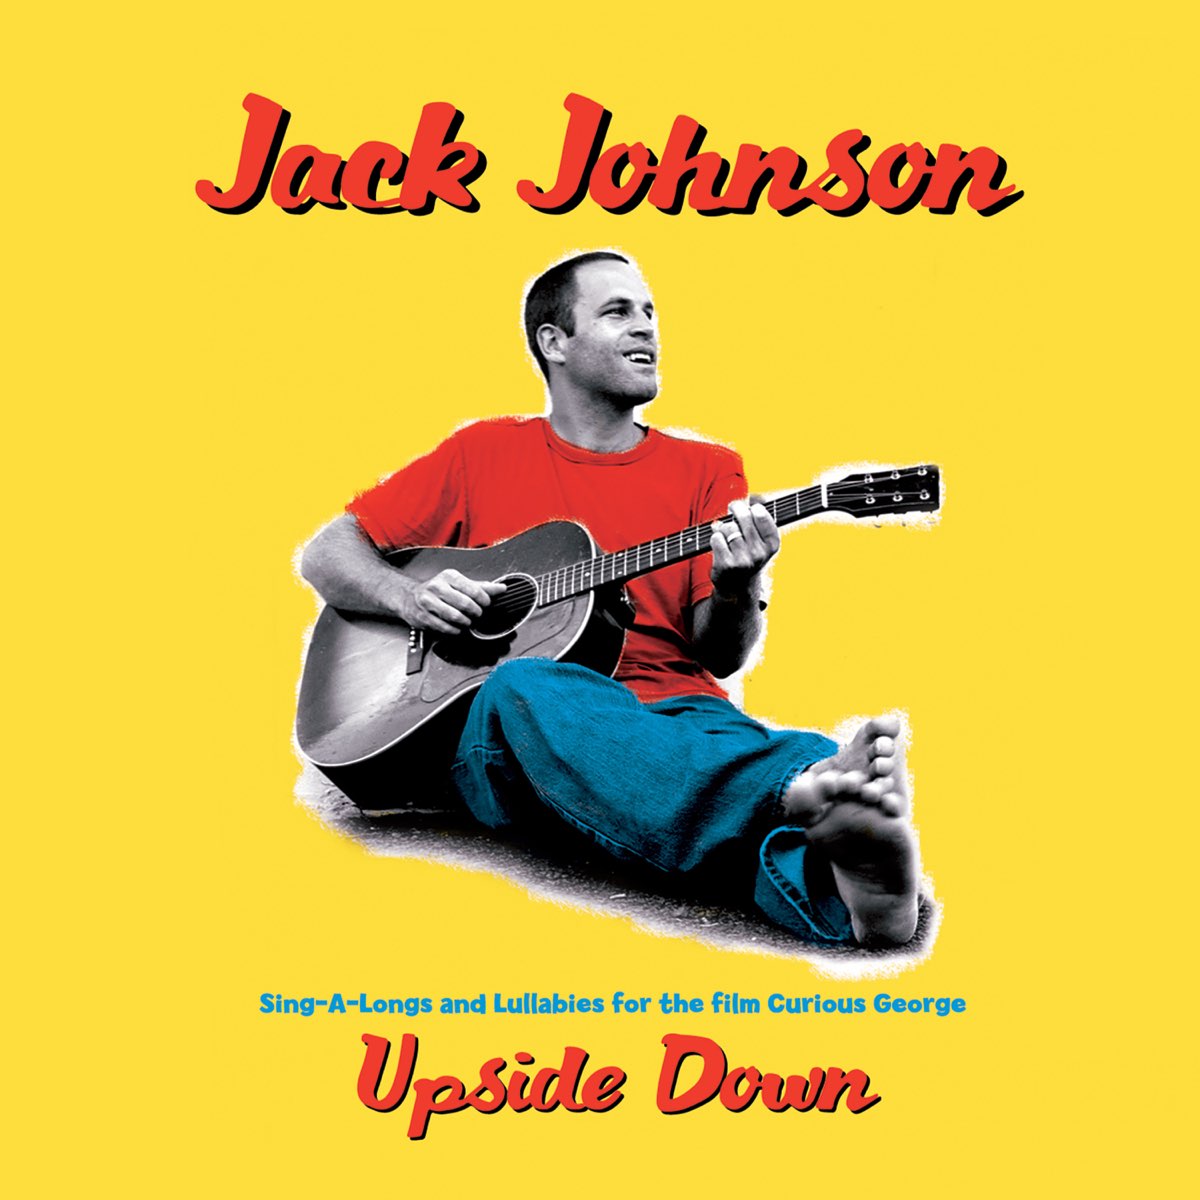 ジャック ジョンソンの Upside Down Single をapple Musicで